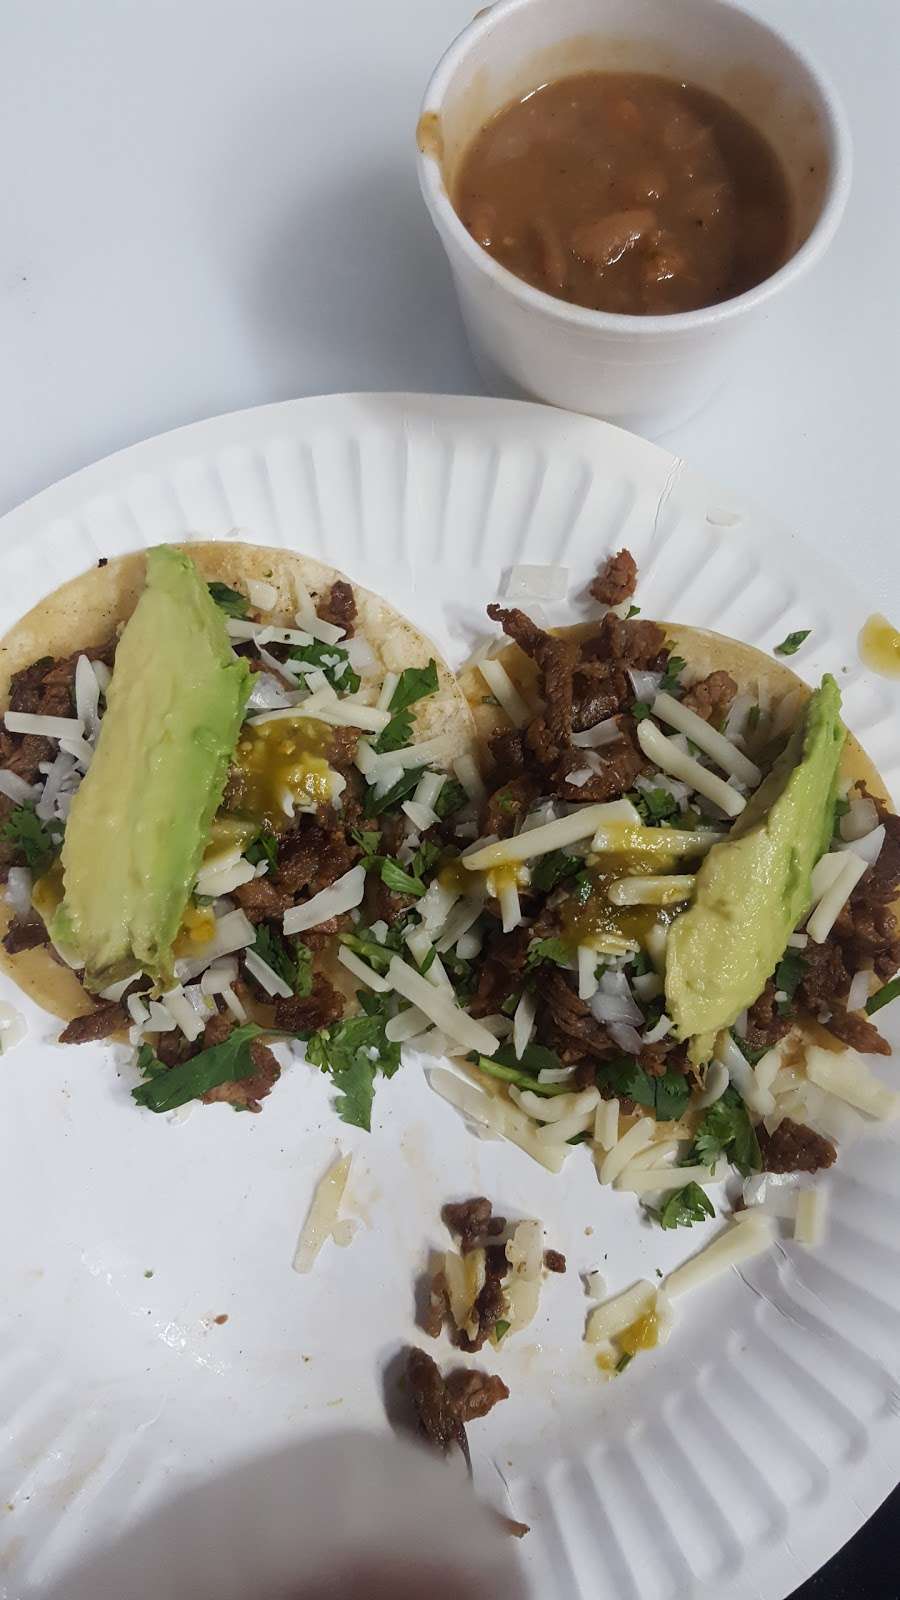 Tacos Super Gallito | 690 W 18th St, San Pedro, CA 90731